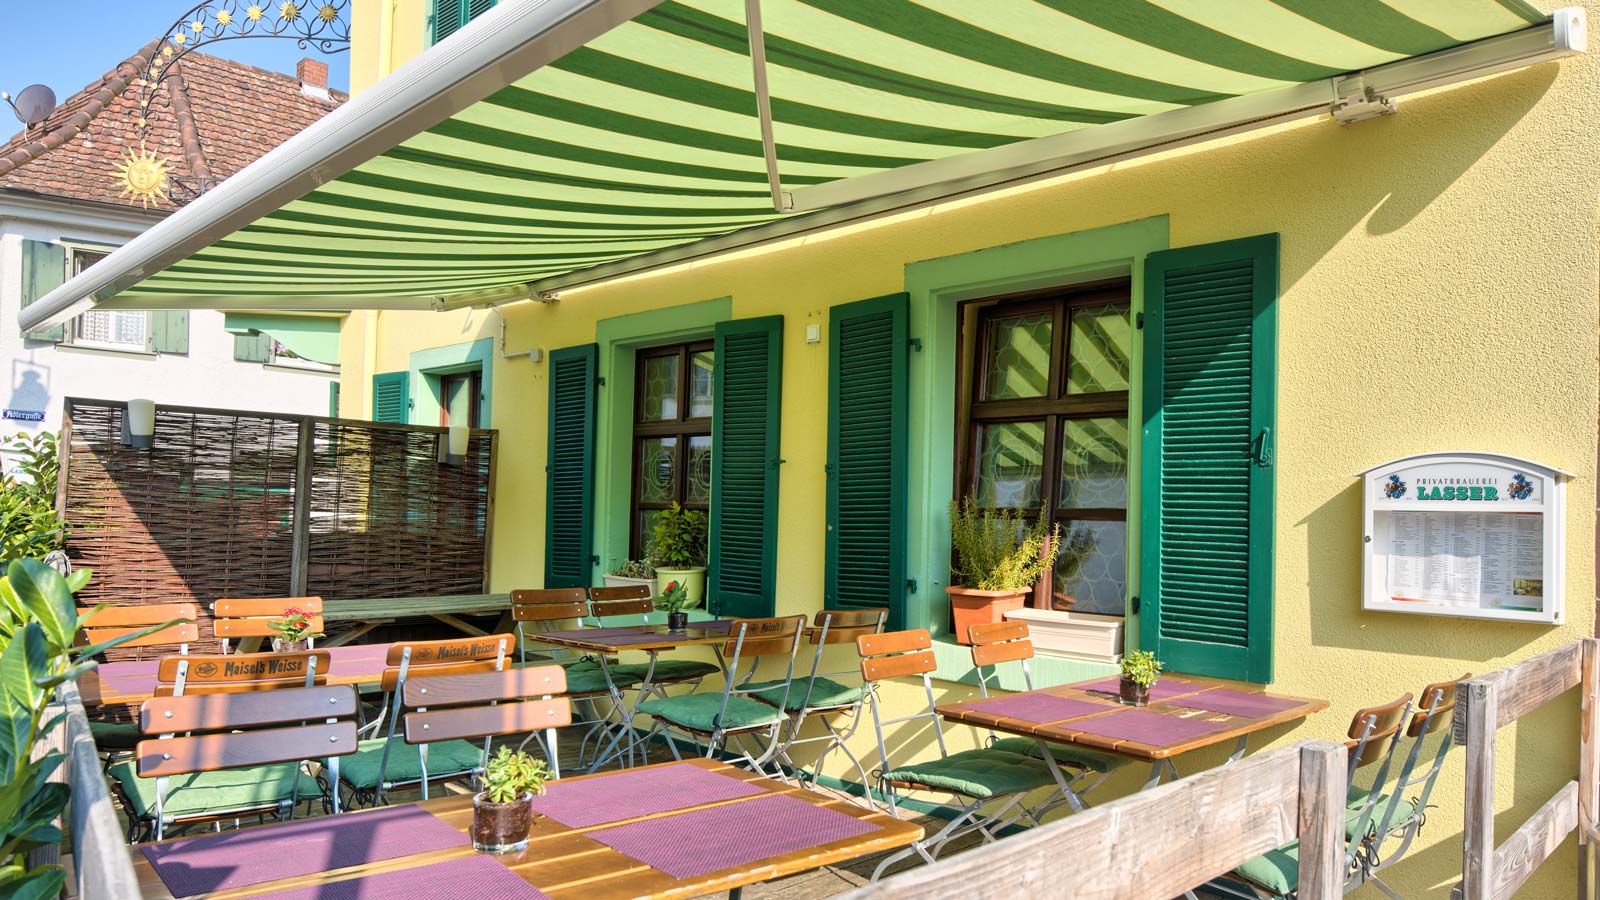 Hotel Restaurant Sonne Staufen :: Italienische Spezialitäten und Deutsche Klassiker